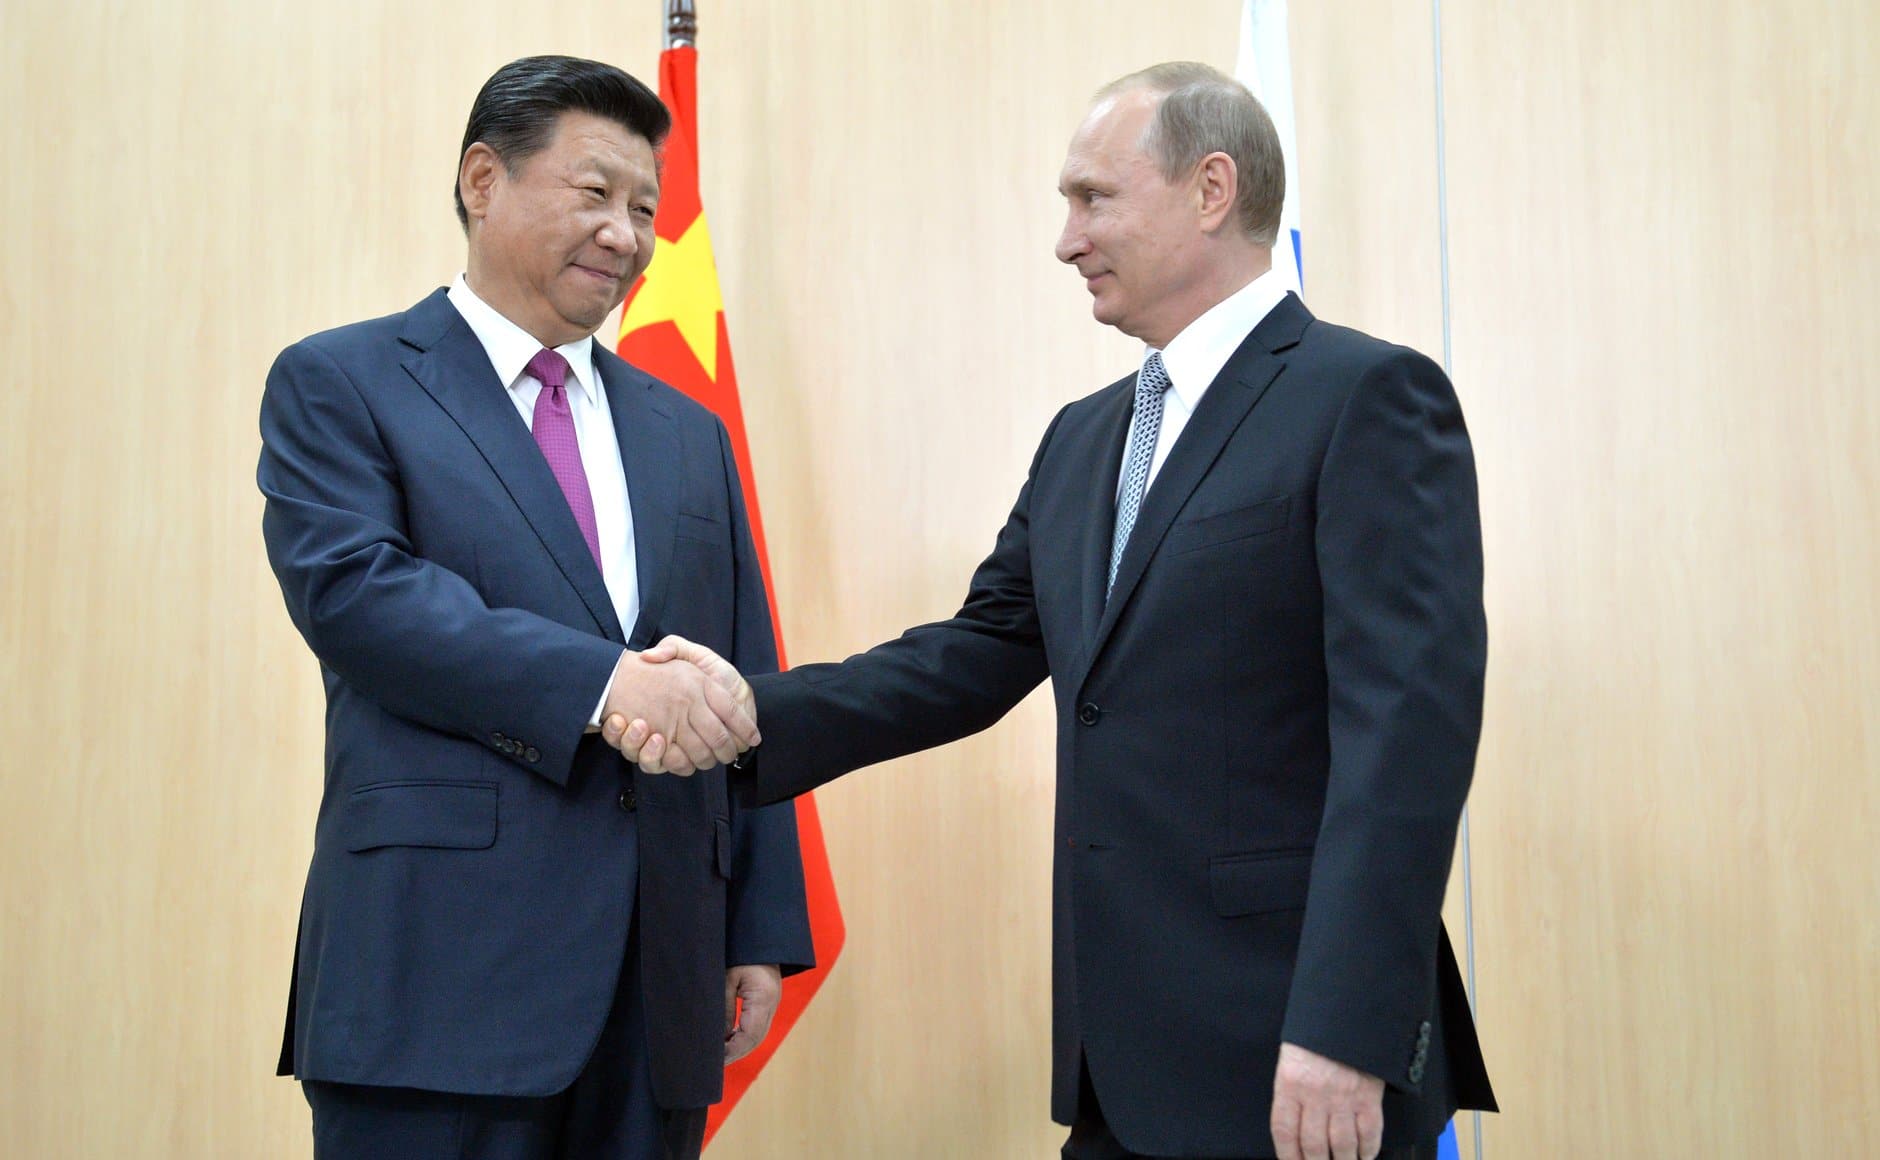 Prezydent komunistycznych Chin – Xi Jinping wzywa do całkowitego pozbycia się broni atomowej.